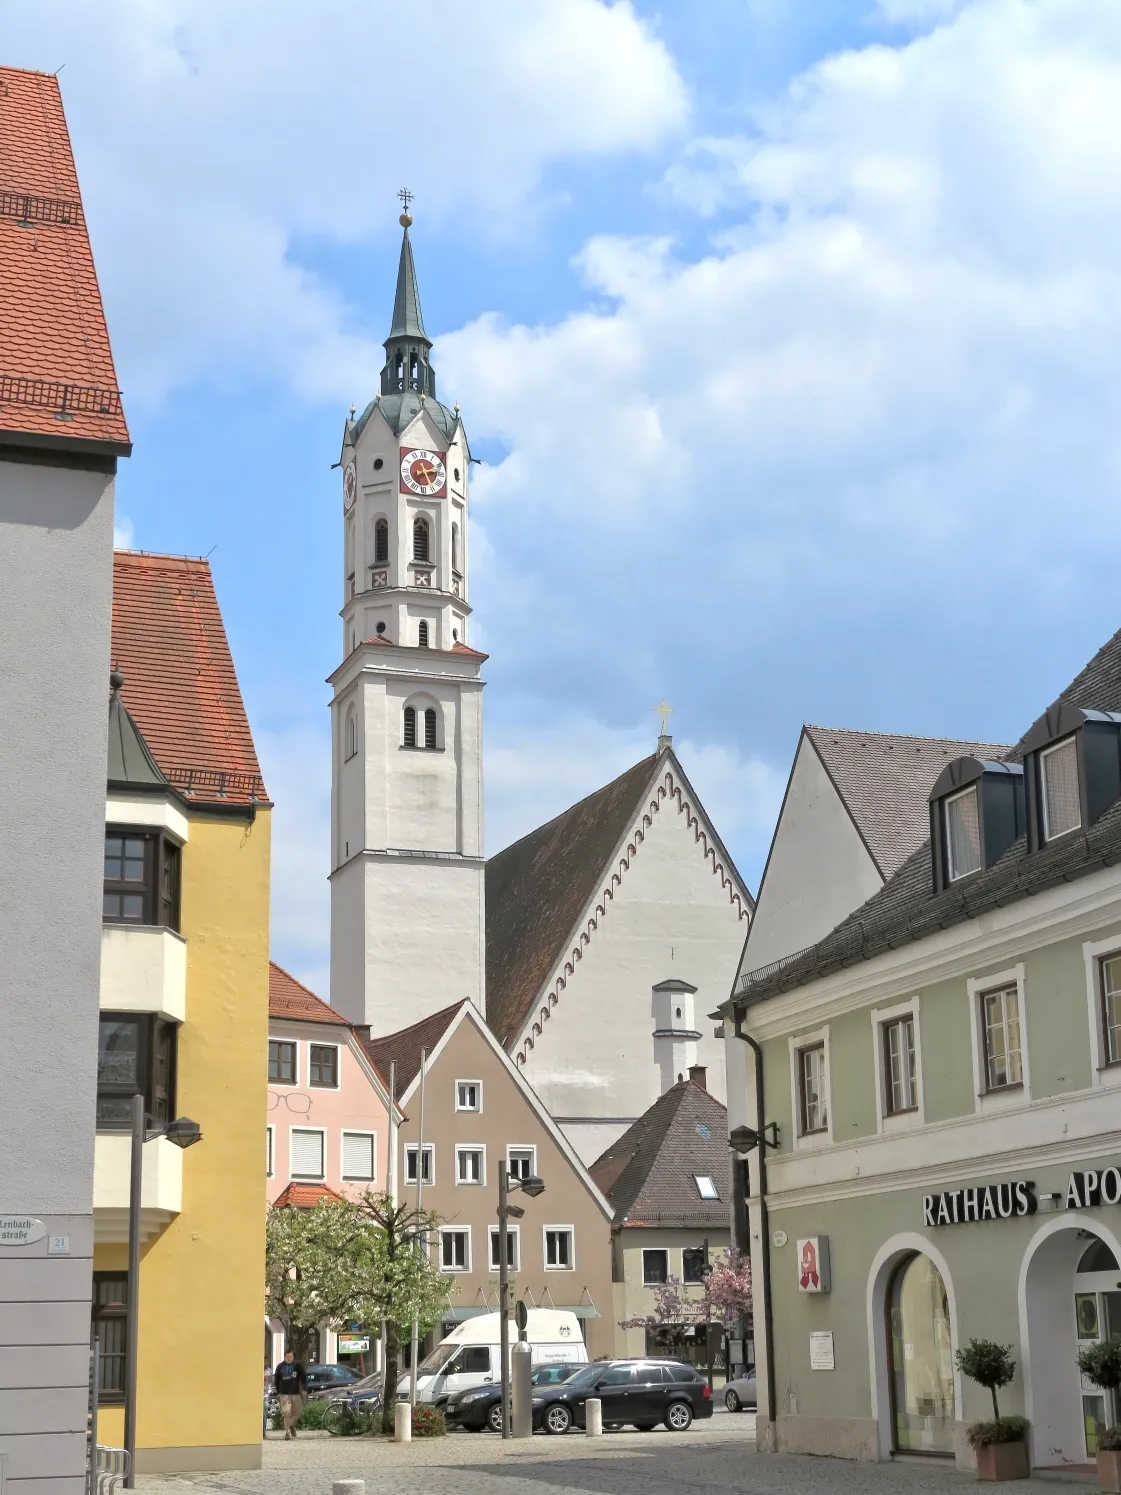 Image of Schrobenhausen